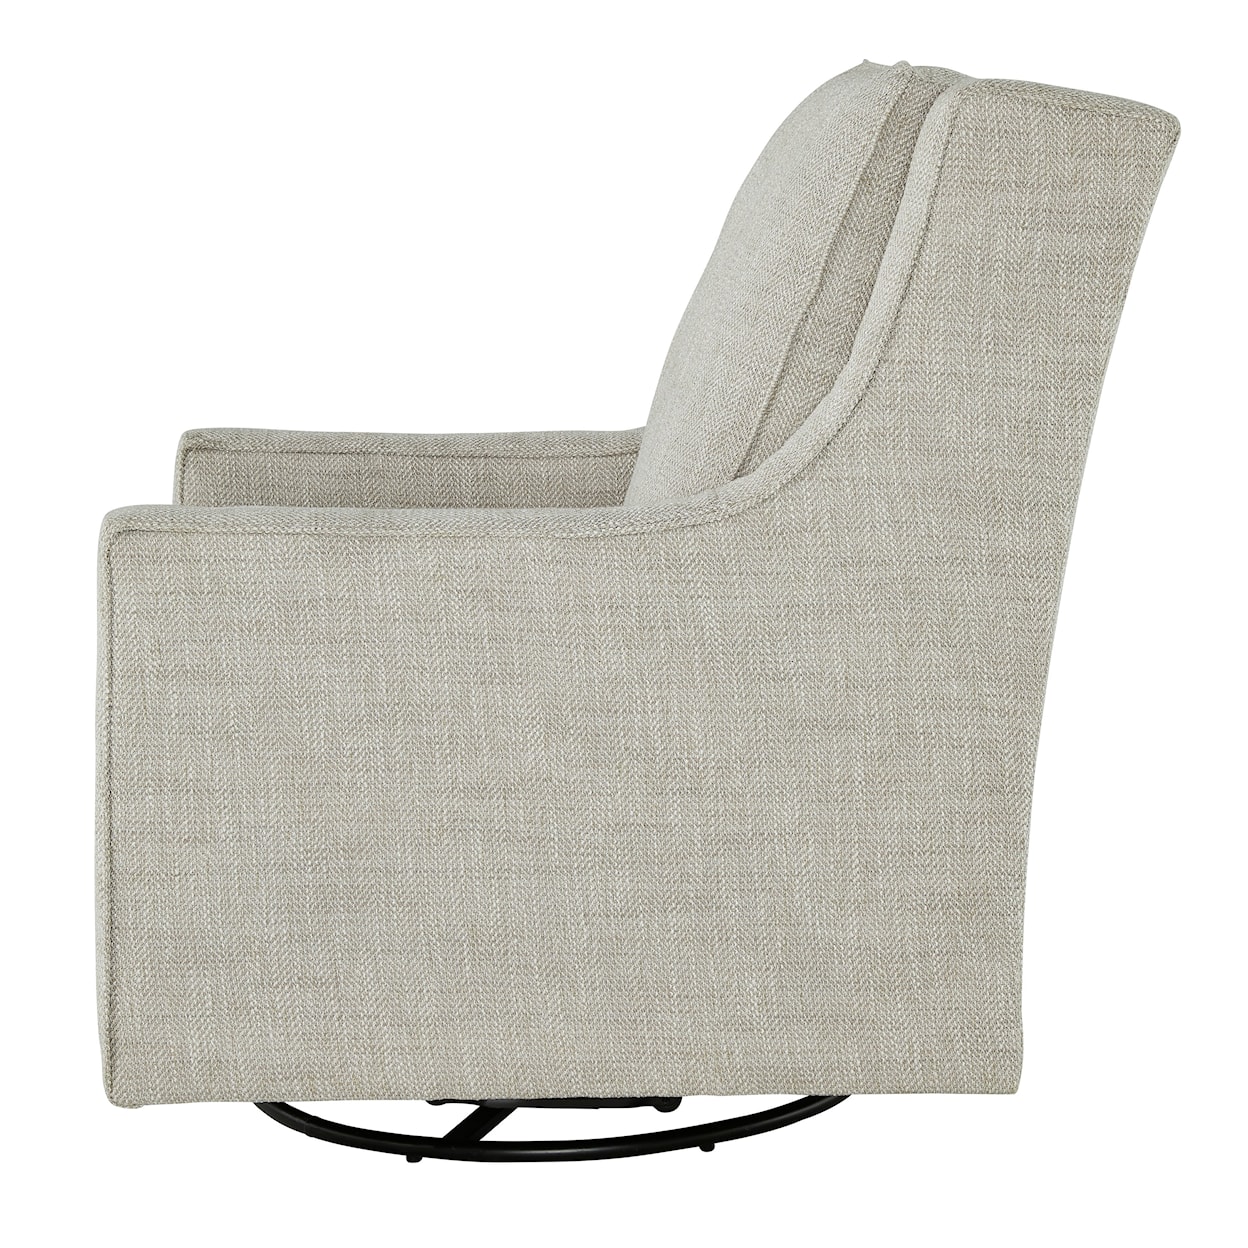 Ashley Furniture Signature Design Kambria Swivel Glider Accent Chair